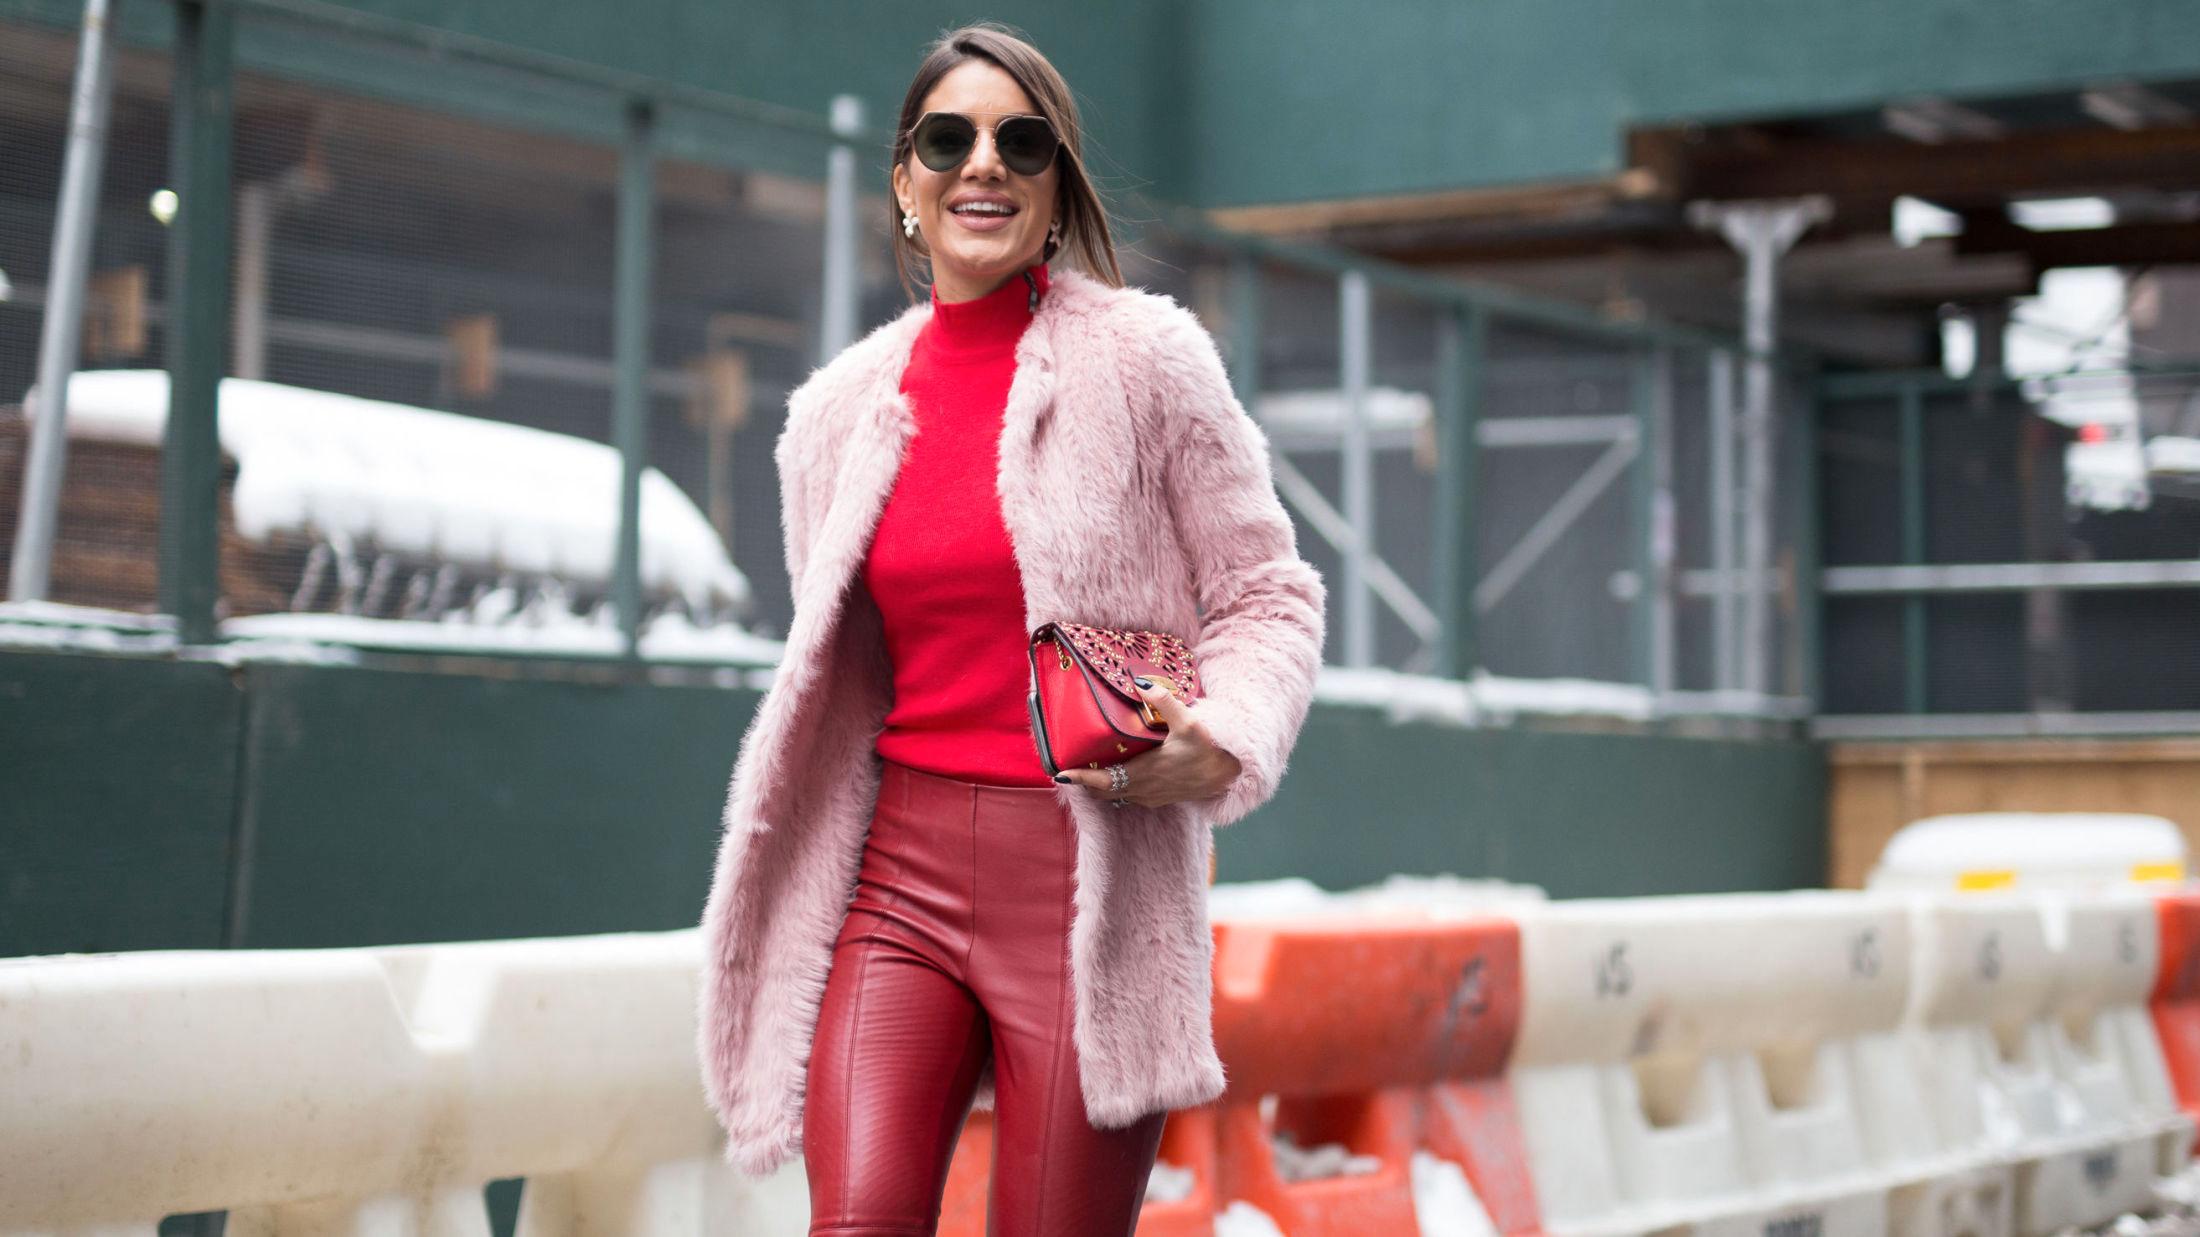 HERLIG KOMBO: Moteblogger Camila Coelho kombinerer ulike rød- og rosatoner med stor suksess. Foto: Getty Images